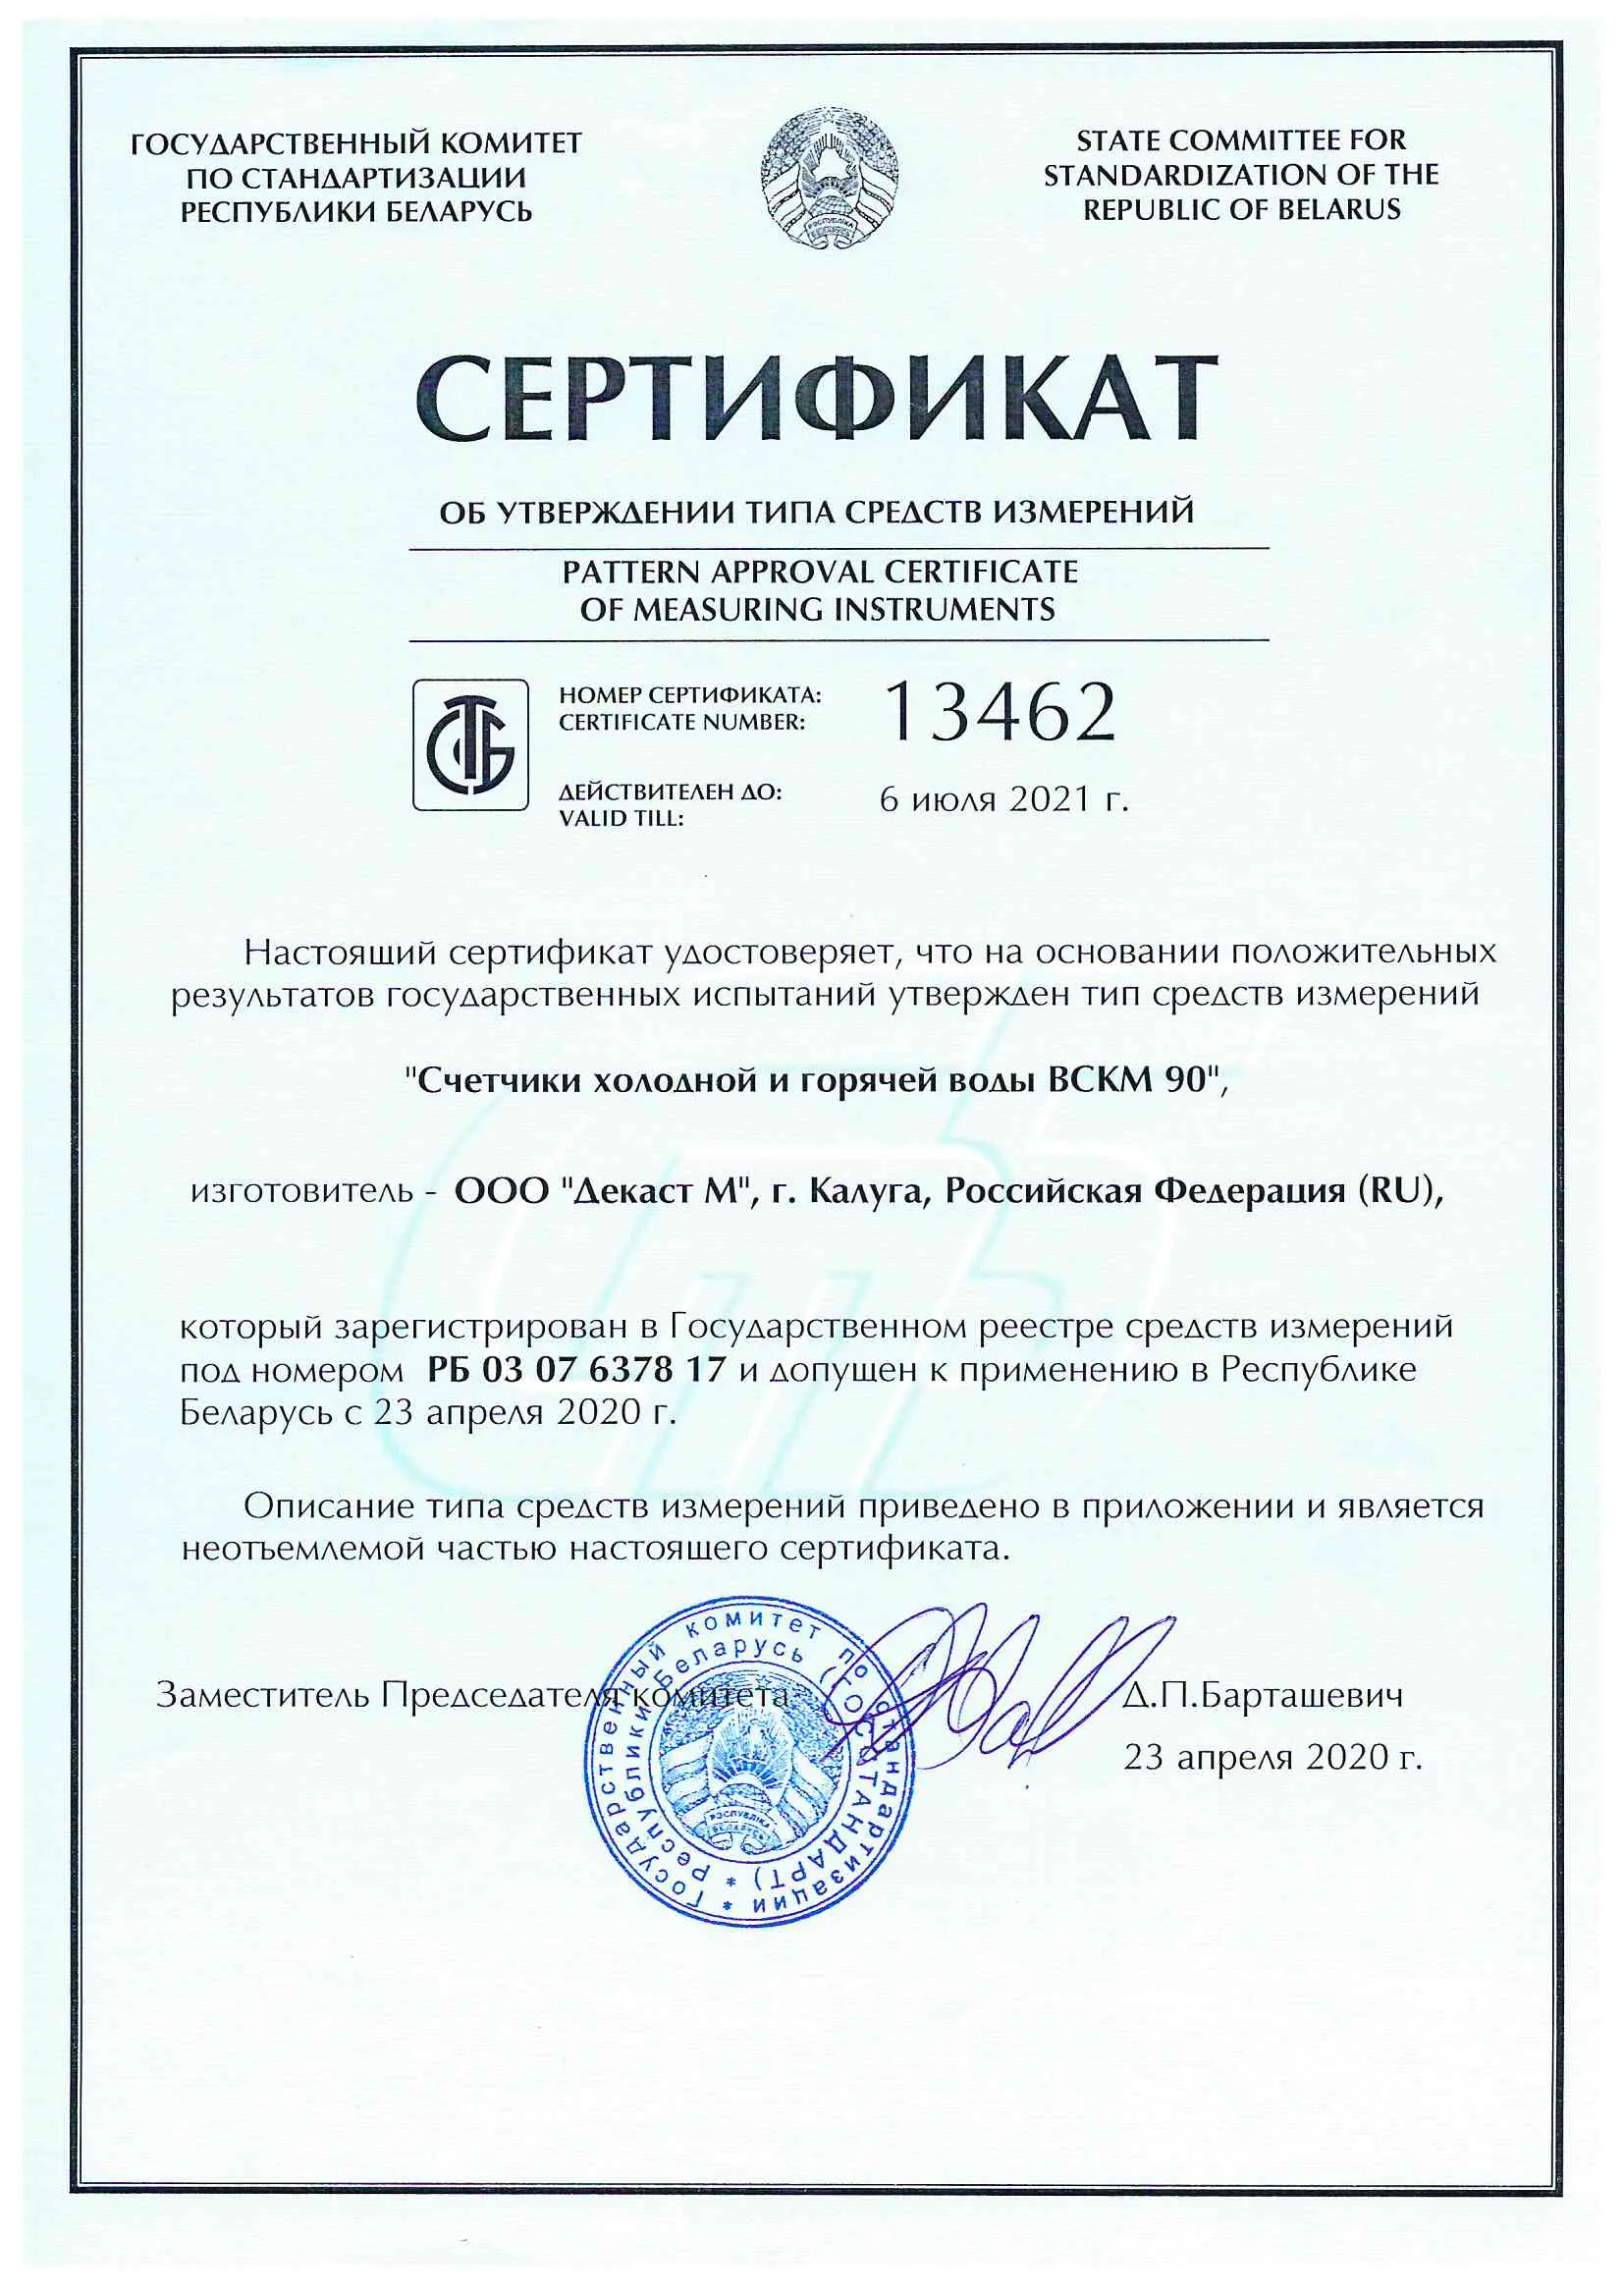 Сертификат об утверждении типа средств измерений ВСКМ 90, Беларусь, до 06.07.2021 (архив)